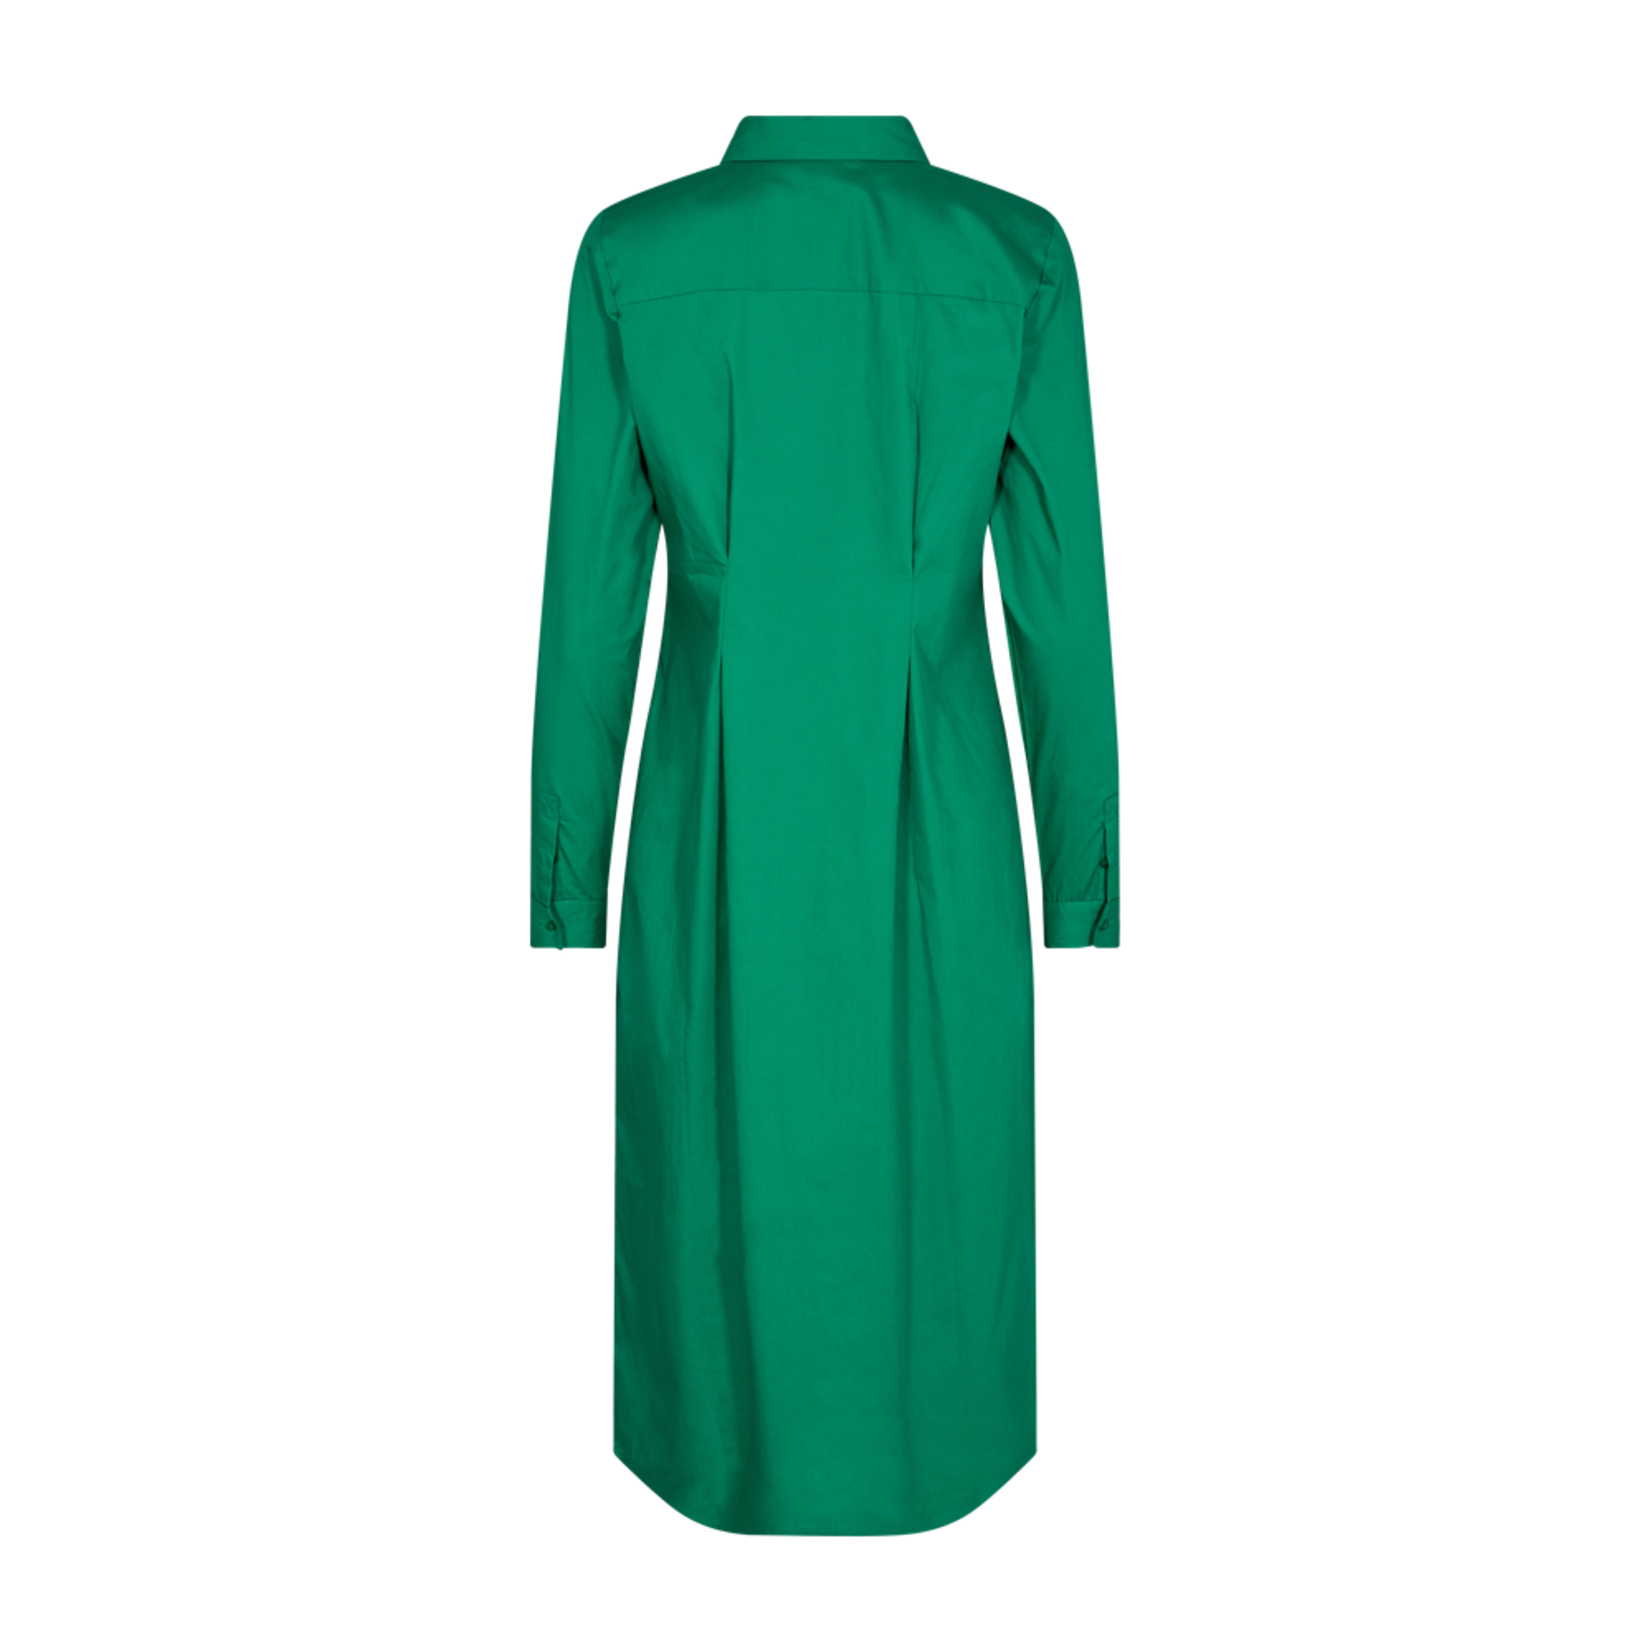 Free/quent Een groen kleedje met ideale pasvorm, flashy in kleur, brengt leven in de brouwerij.